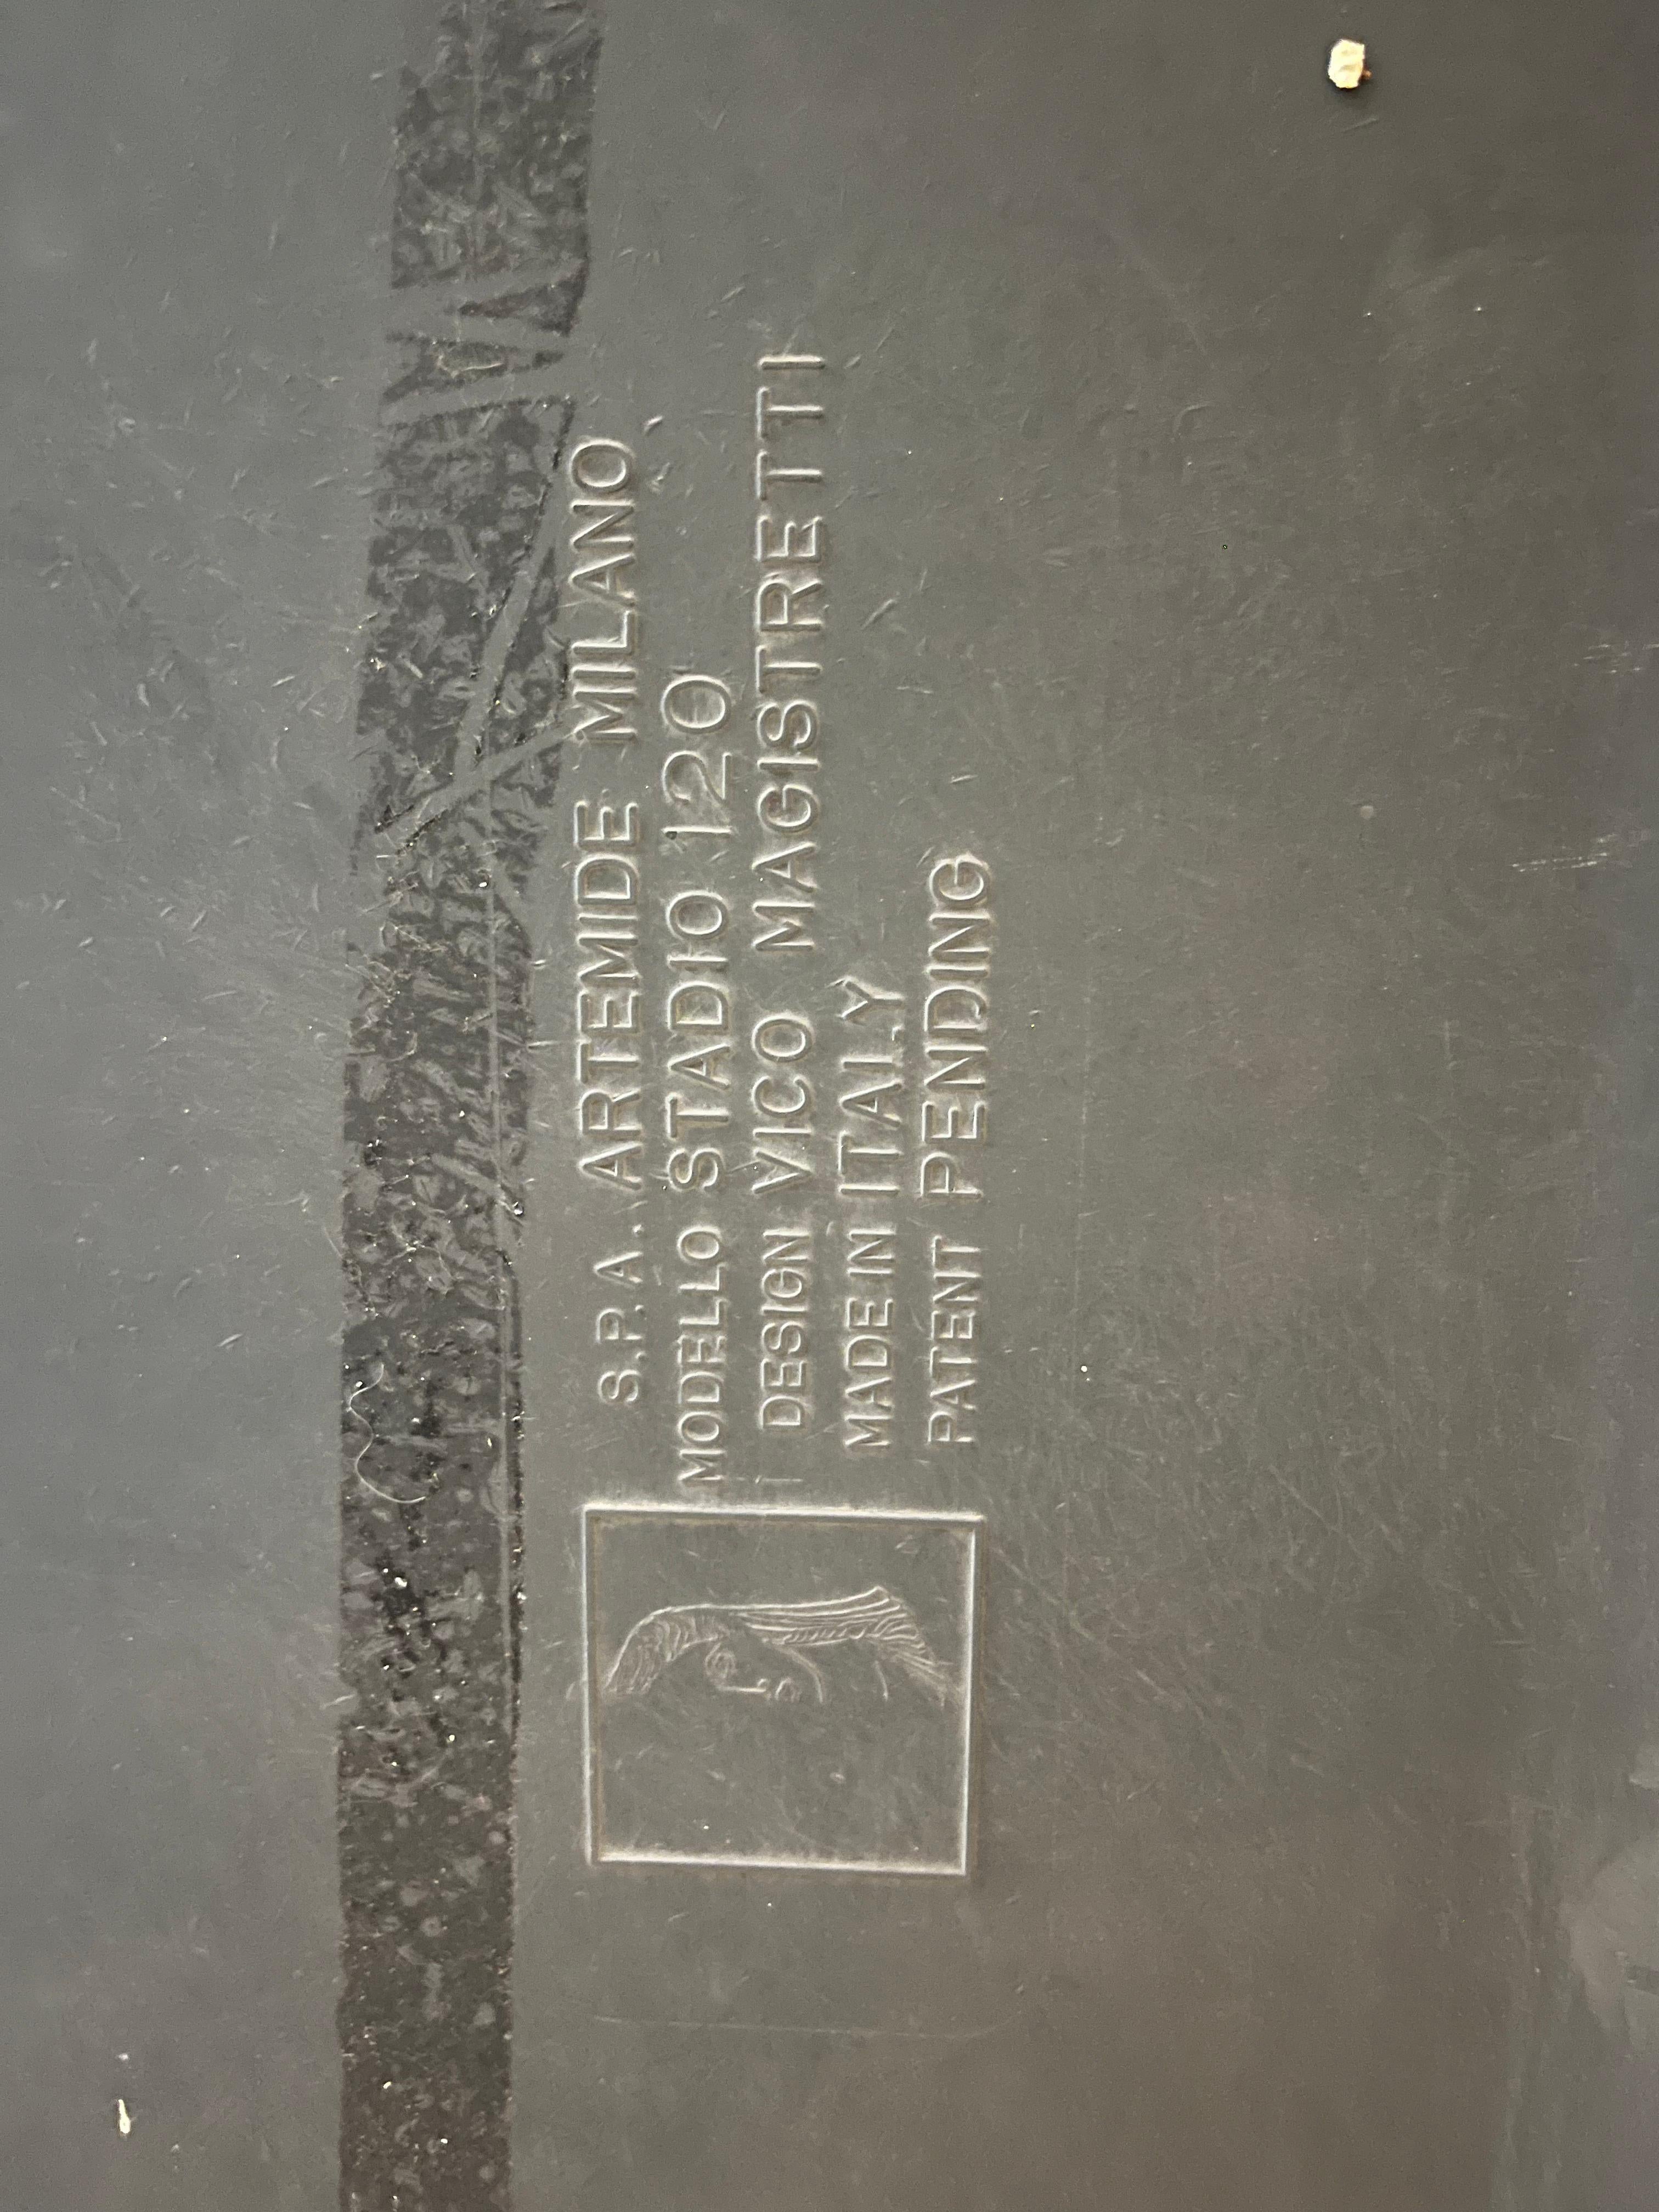 Tavolo in materiale plastico colore nero disegnato da Vico Magistretti negli anni 70 per Artemide. Il tavolo prende il nome di Stadio 120, come da marchio inciso sotto il piano.
Completano il set 4 sedie in materiale plastico sempre disegnate da